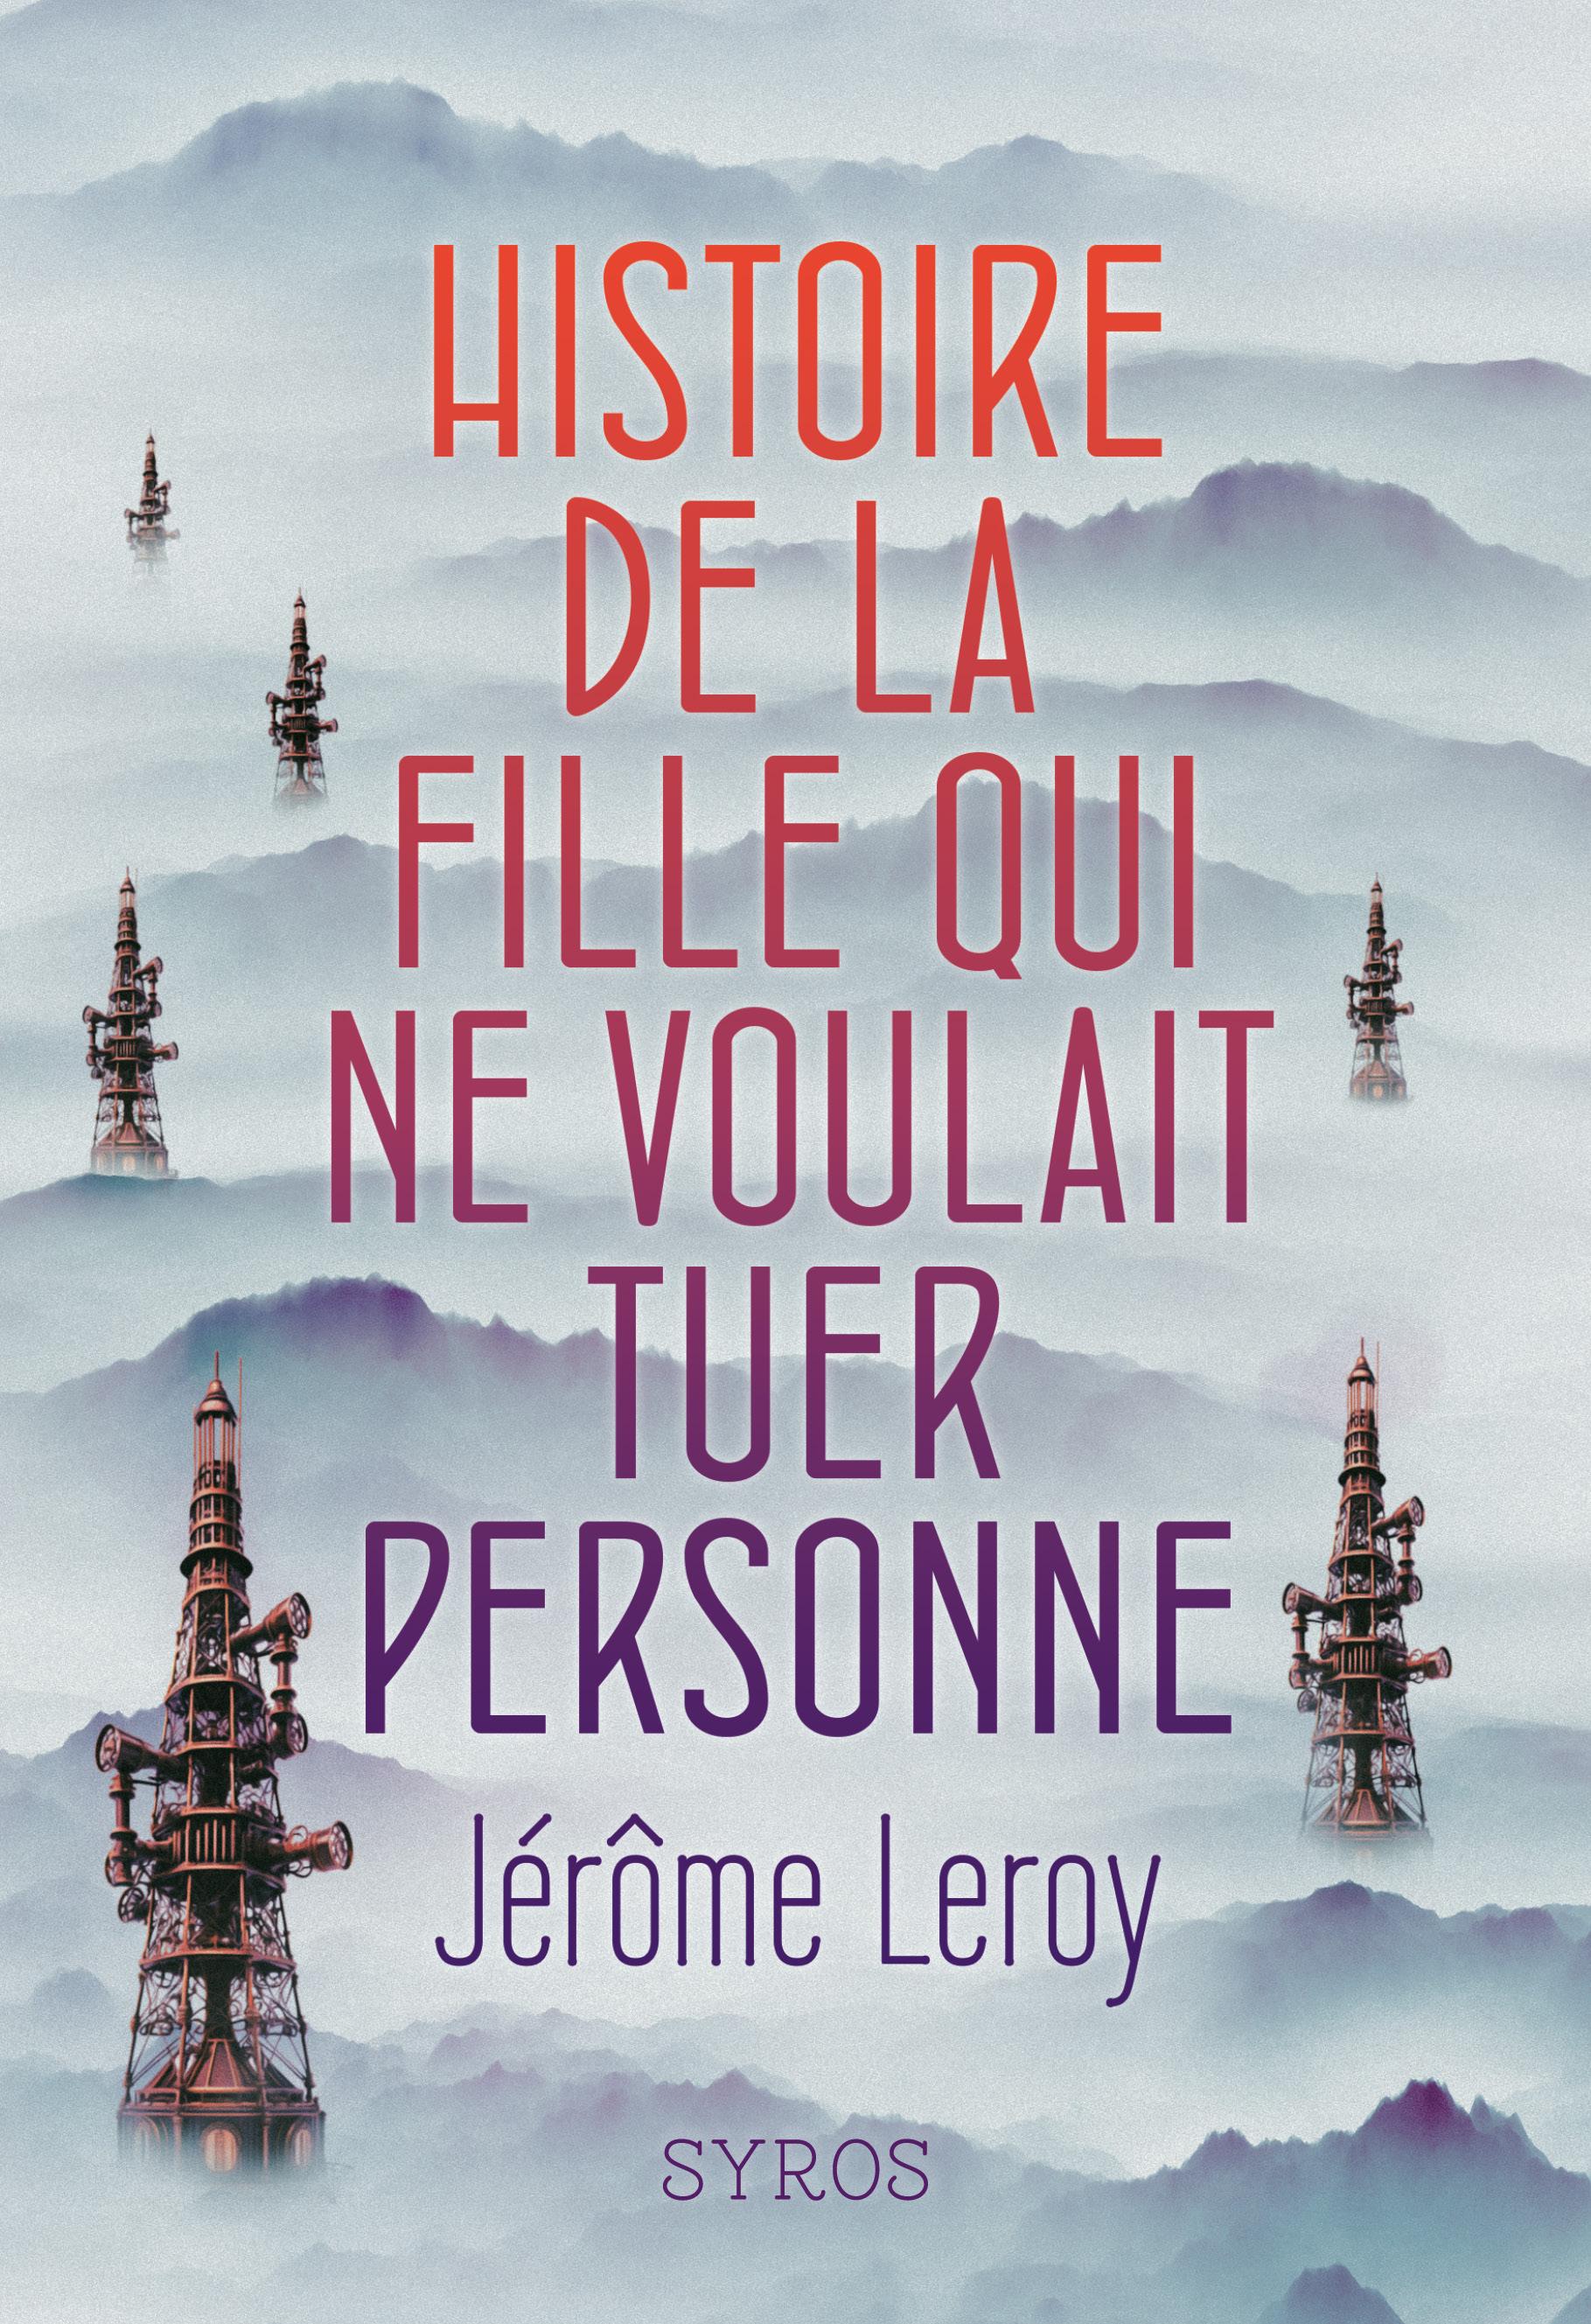 "Histoire de la fille qui ne voulait tuer personne",  un roman de Jérôme Leroy en lice pour le prix RTS littérature ados 2025 [Syros]